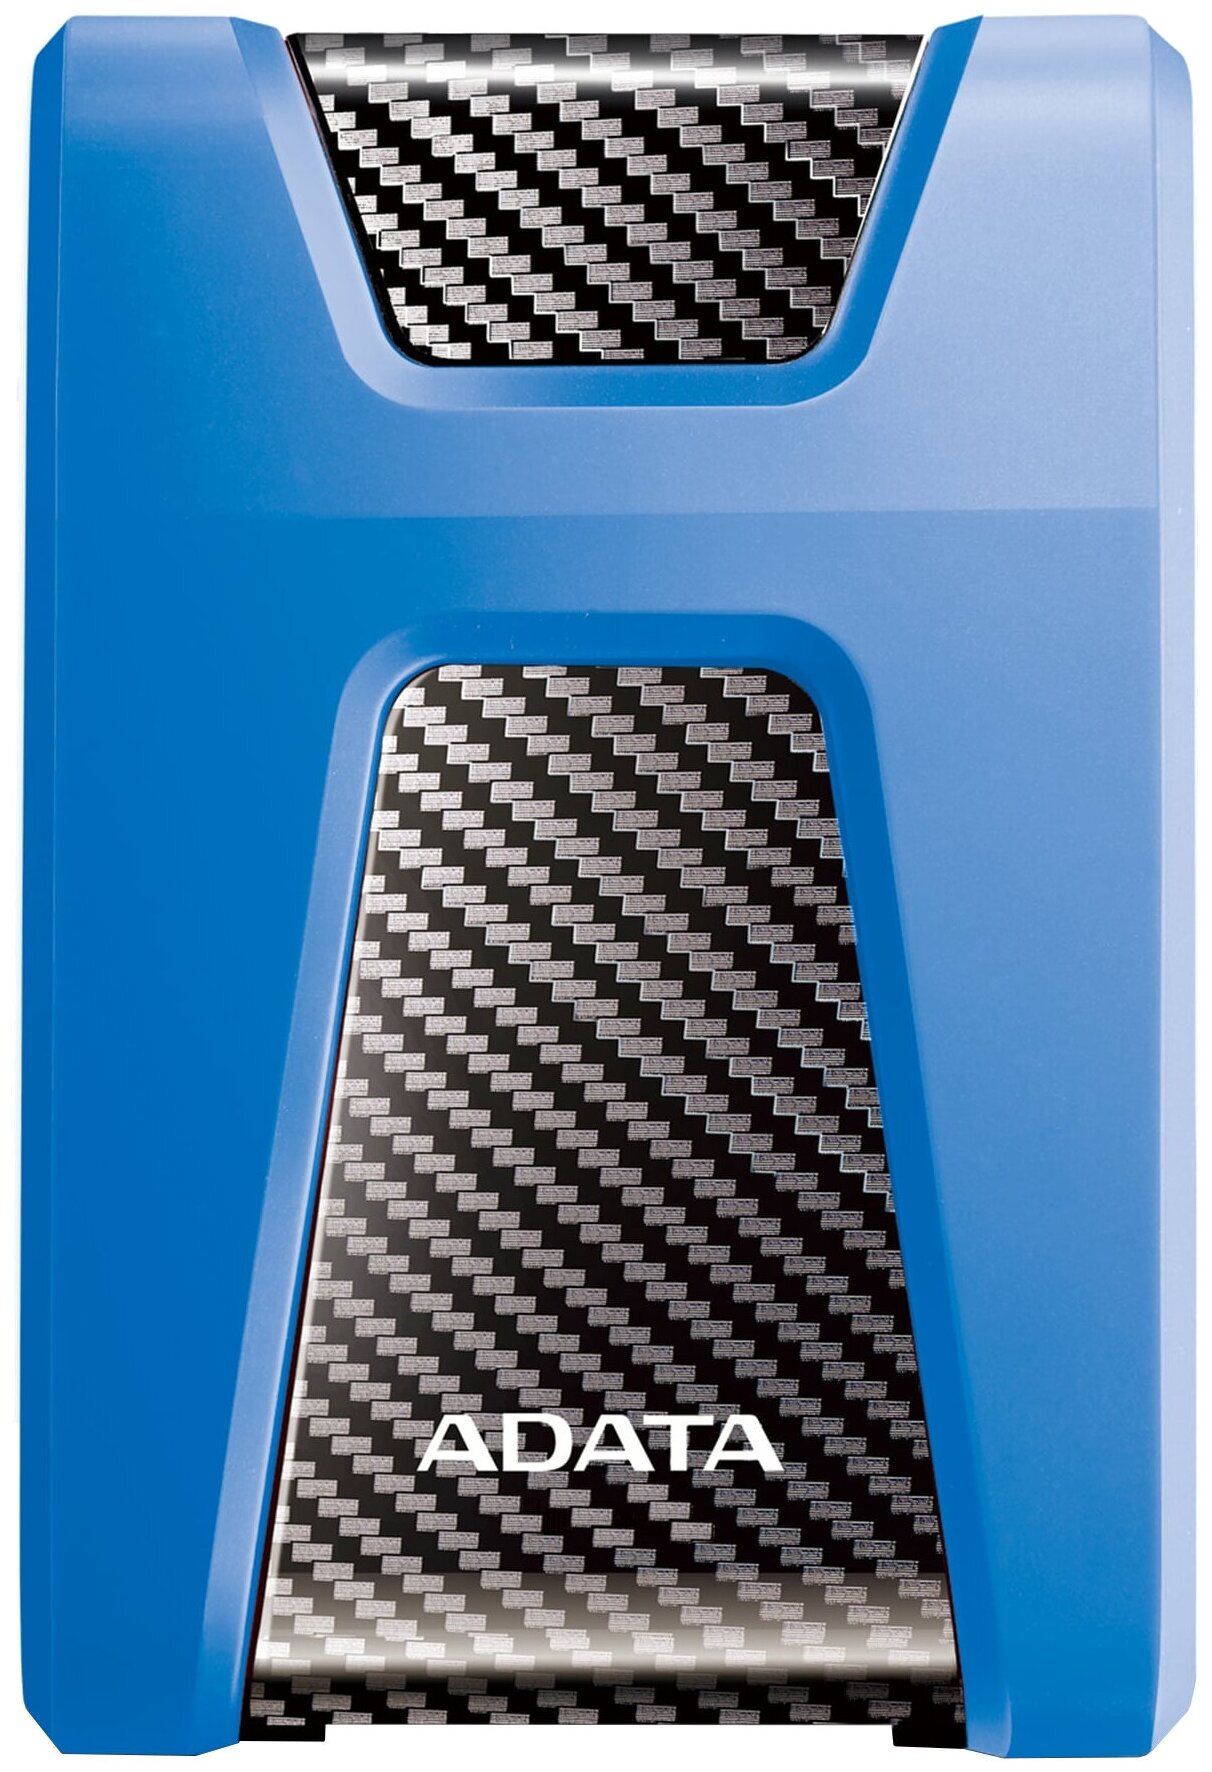 Жесткий диск A-Data USB 3.0 2Tb AHD650-2TU31-CBL HD650 DashDrive Durable 2.5" синий